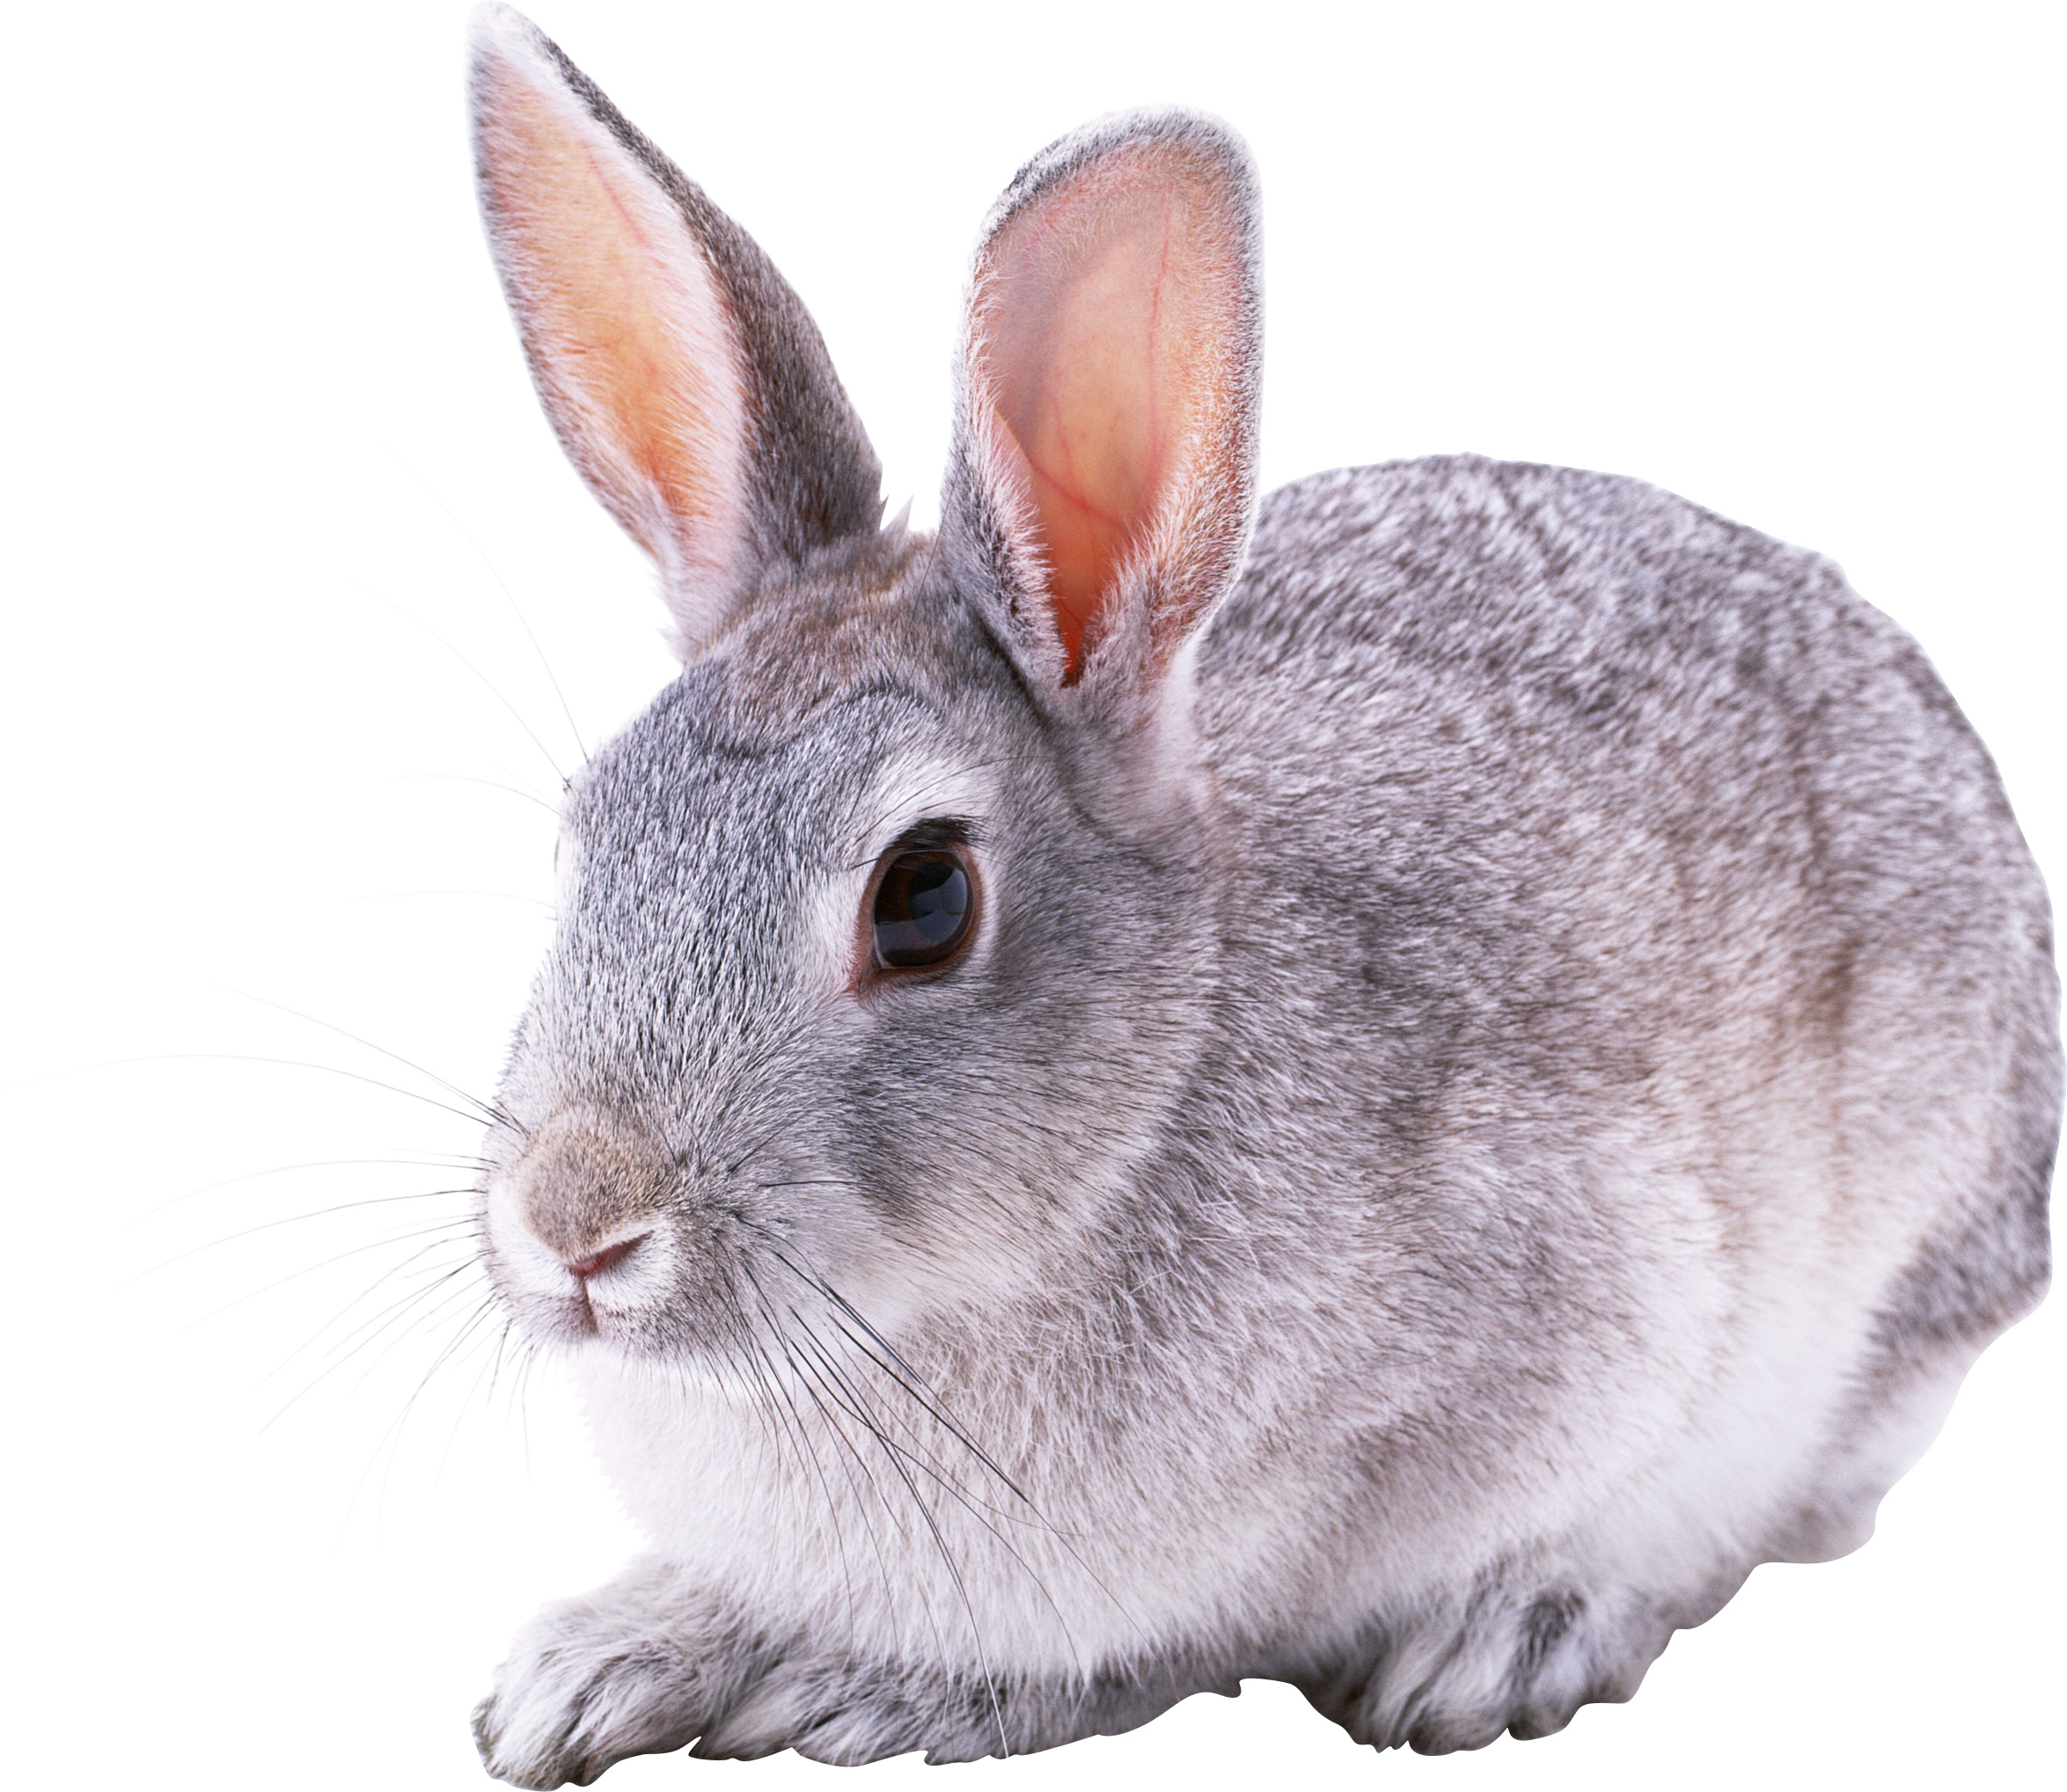 Rabbit Species